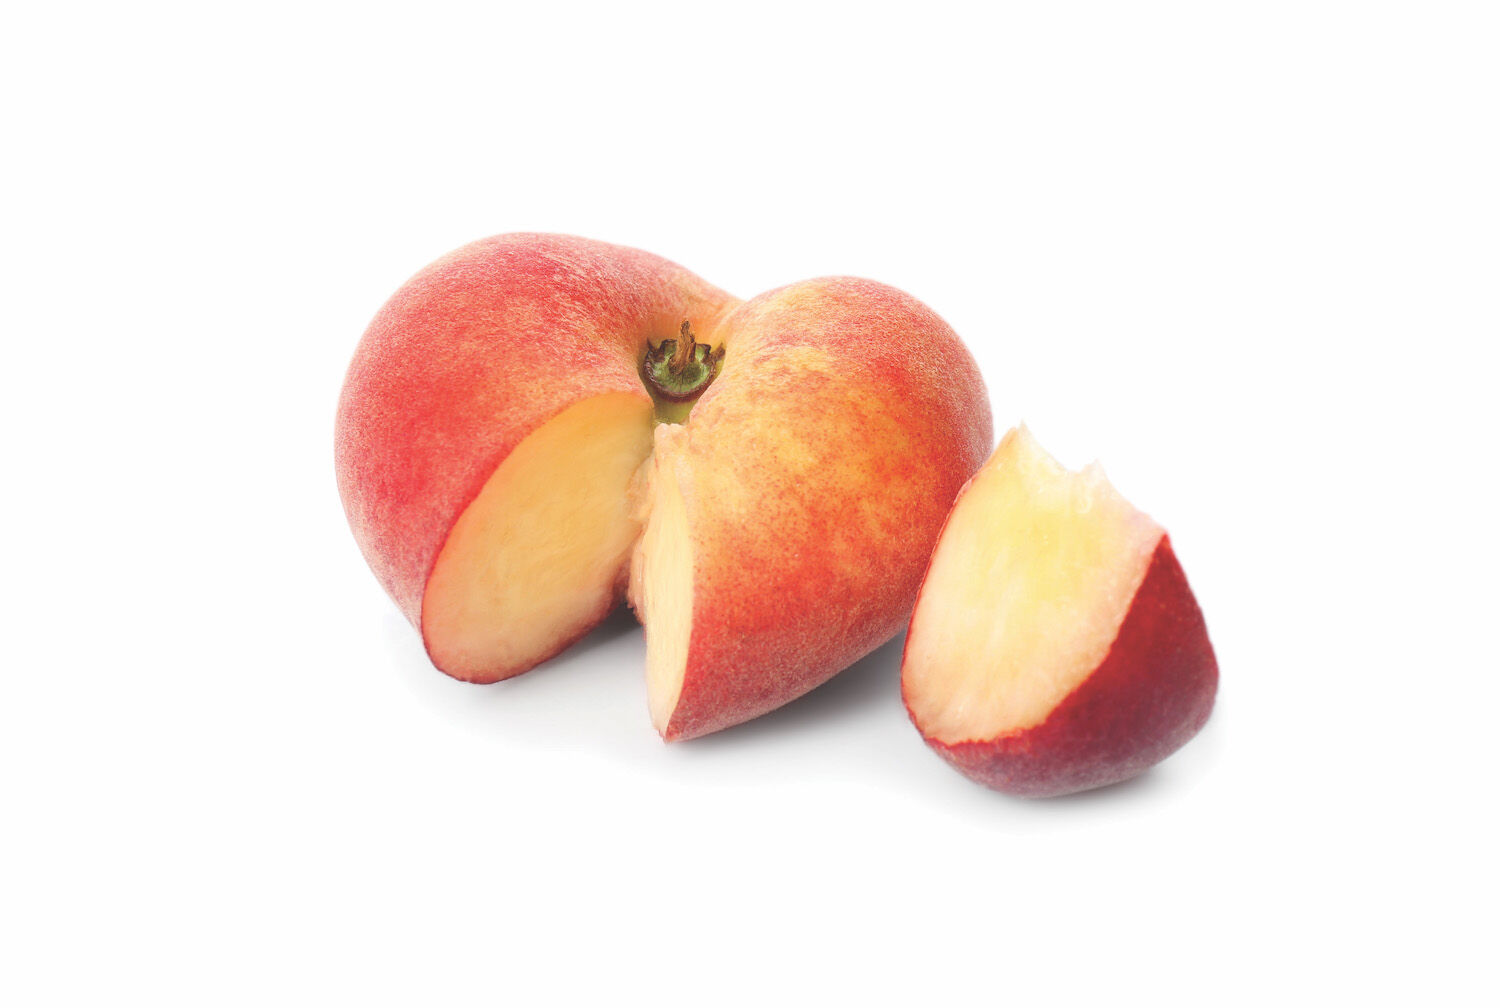 WWL - Peach